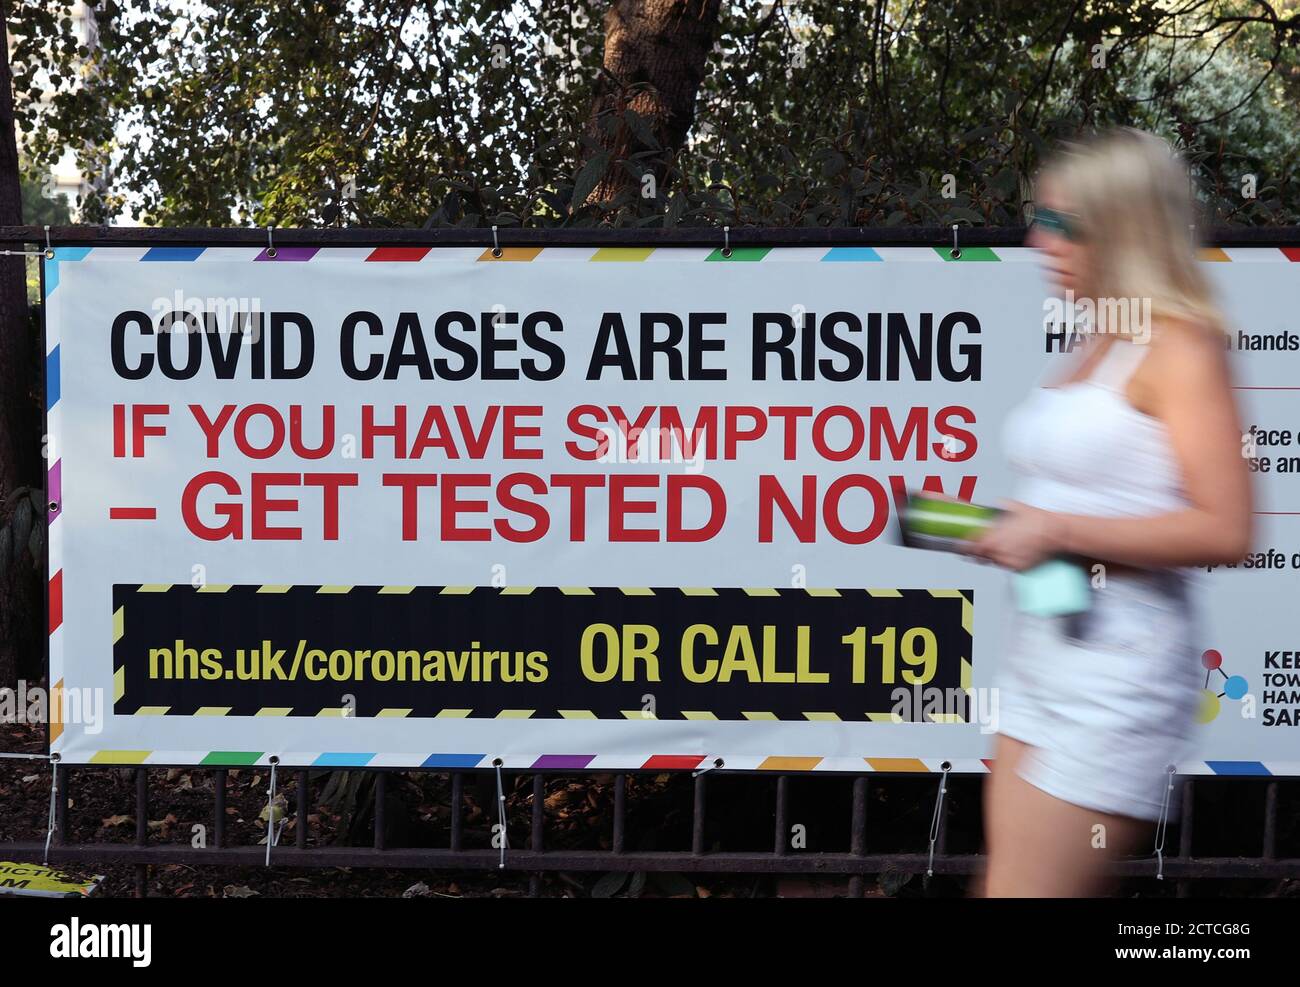 Ein öffentliches Hinweisschild warnt vor steigenden Covid-19-Fällen in London, nachdem Premierminister Boris Johnson eine Reihe neuer Beschränkungen zur Bekämpfung des Coronavirus-Ausbruchs in England angekündigt hatte. Stockfoto